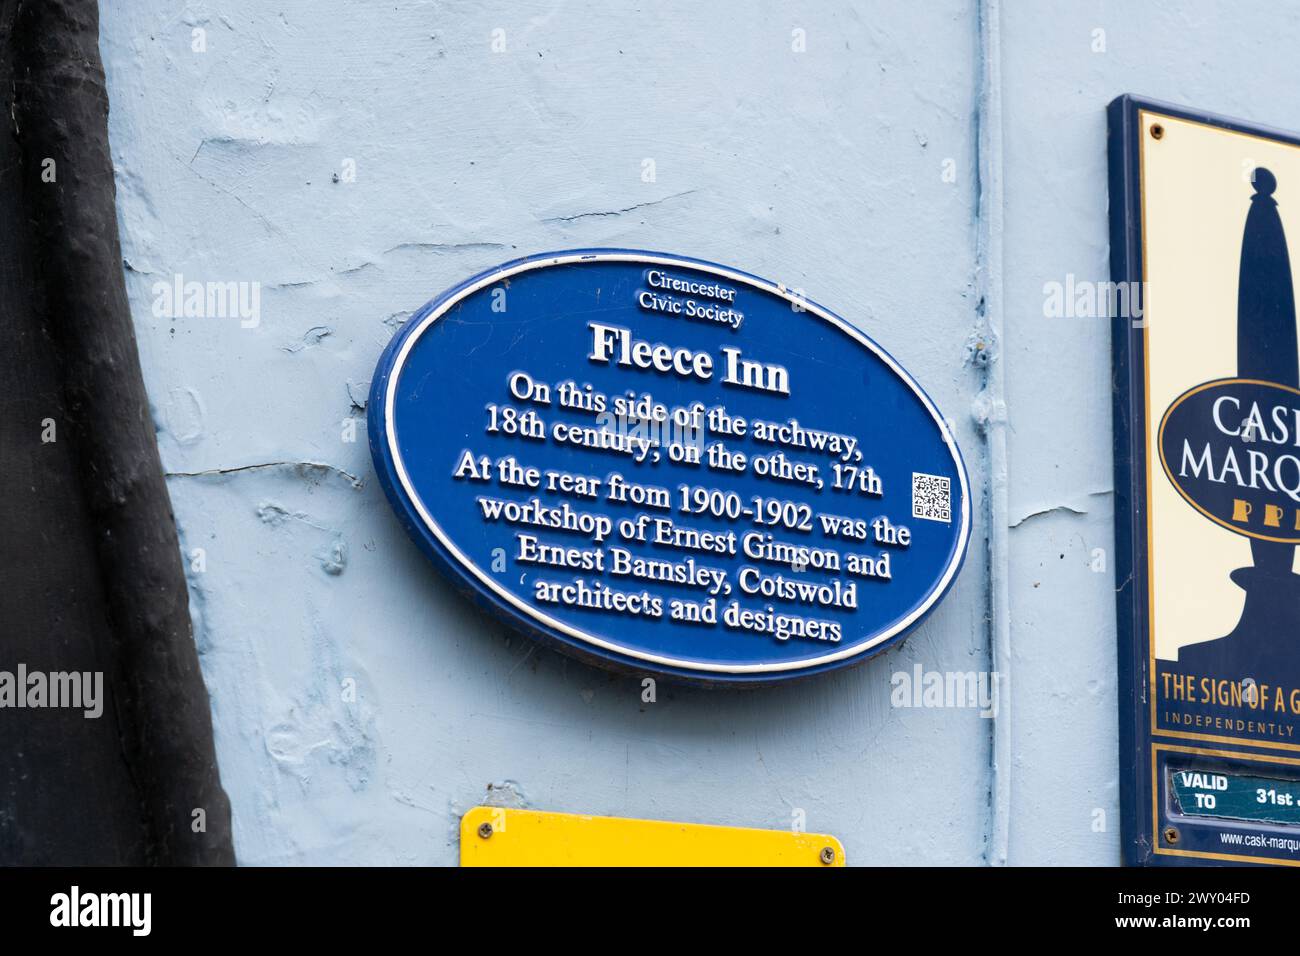 Une plaque Cirencester Civic Society sur le Fleece Inn indique qu'un côté du bâtiment est du XVIIe siècle, l'autre du XVIIIe siècle. Cirencester, Royaume-Uni Banque D'Images